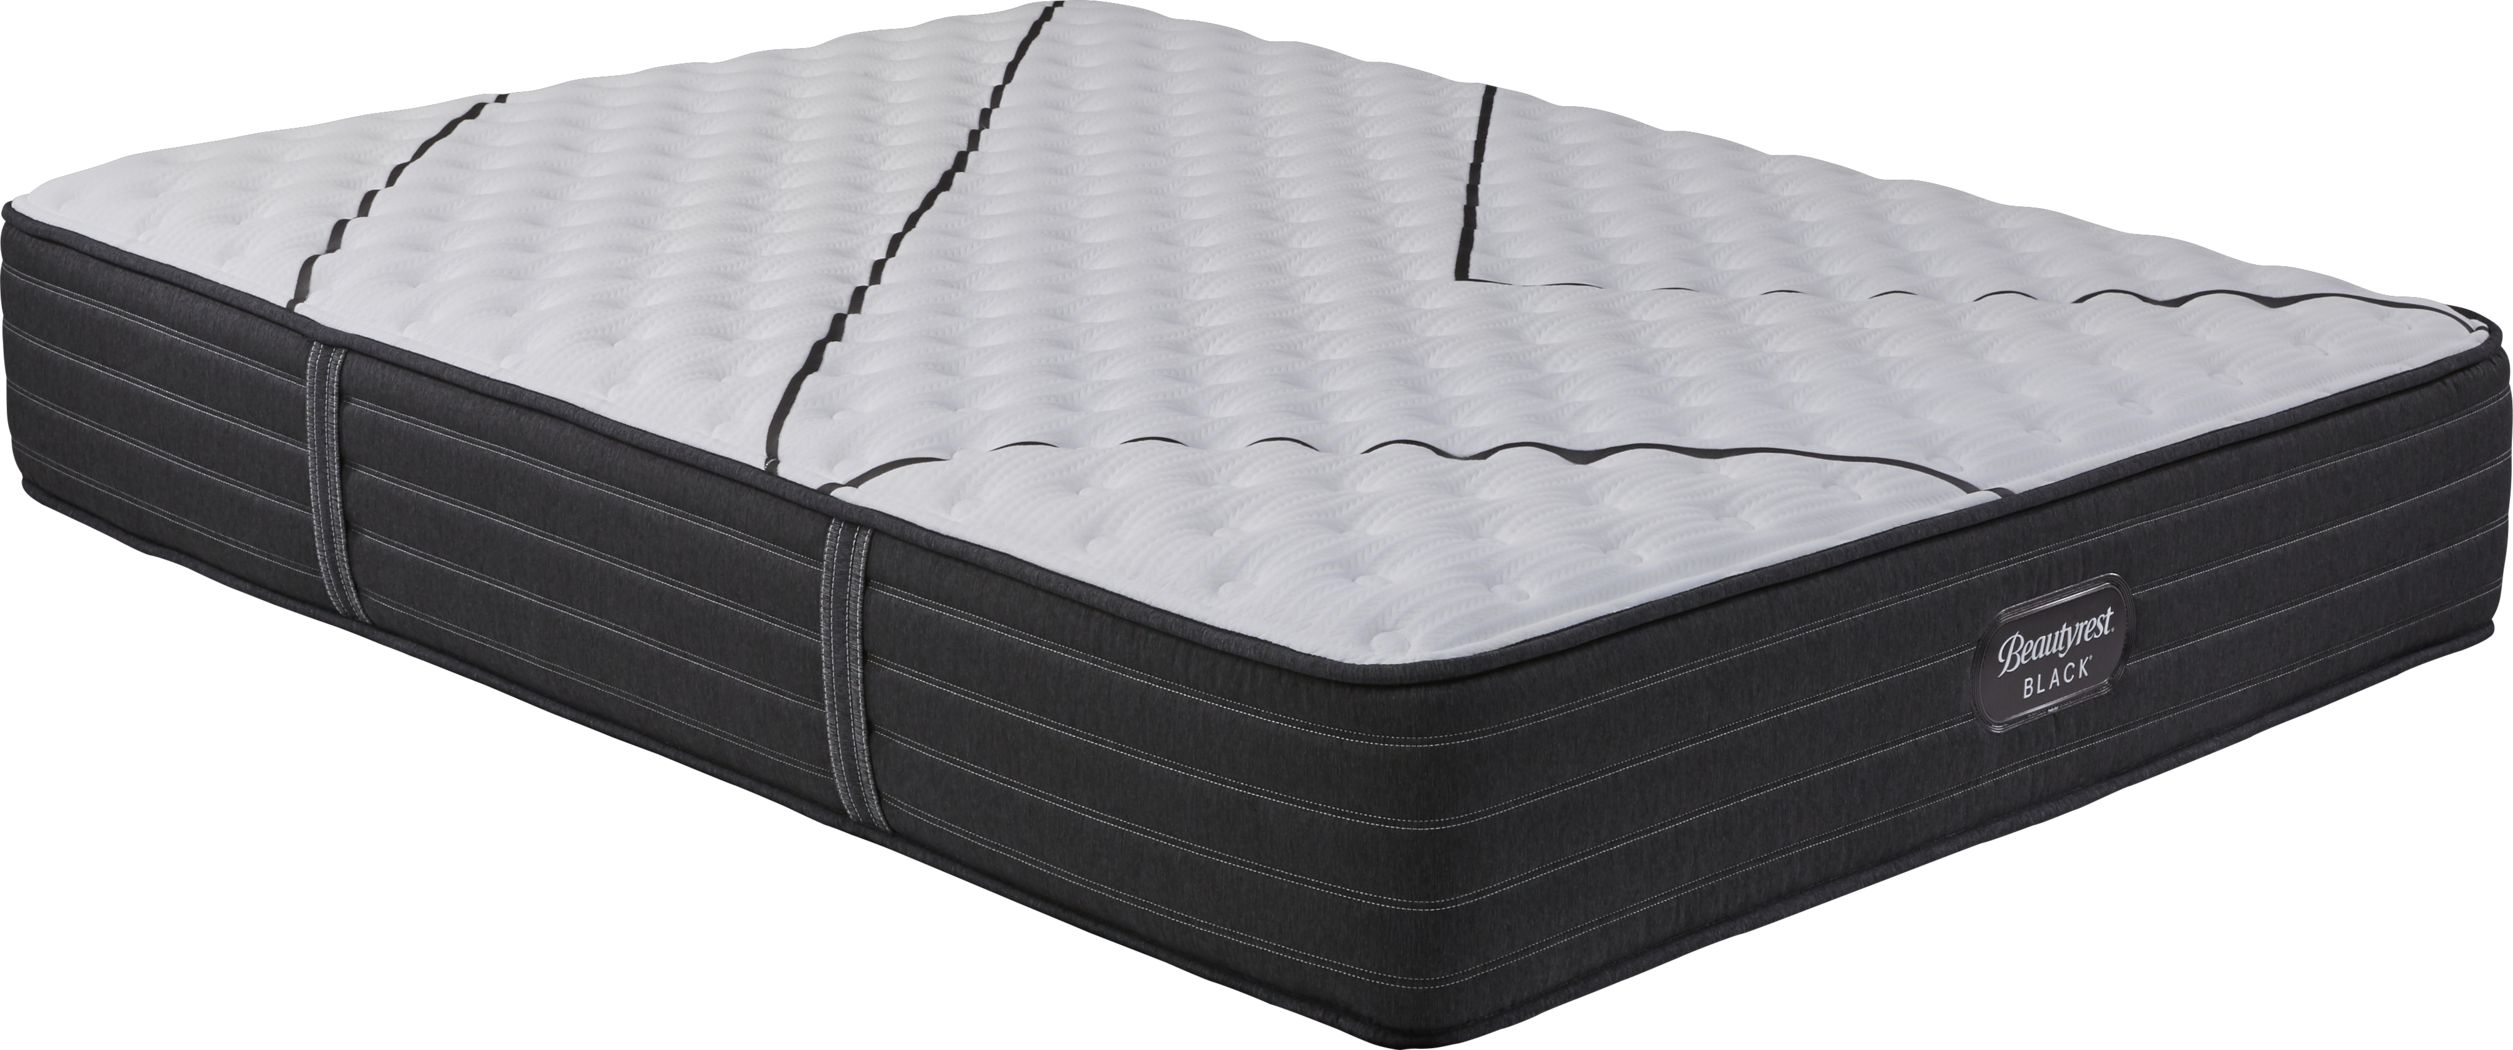 beautyrest black extra firm queen mattress